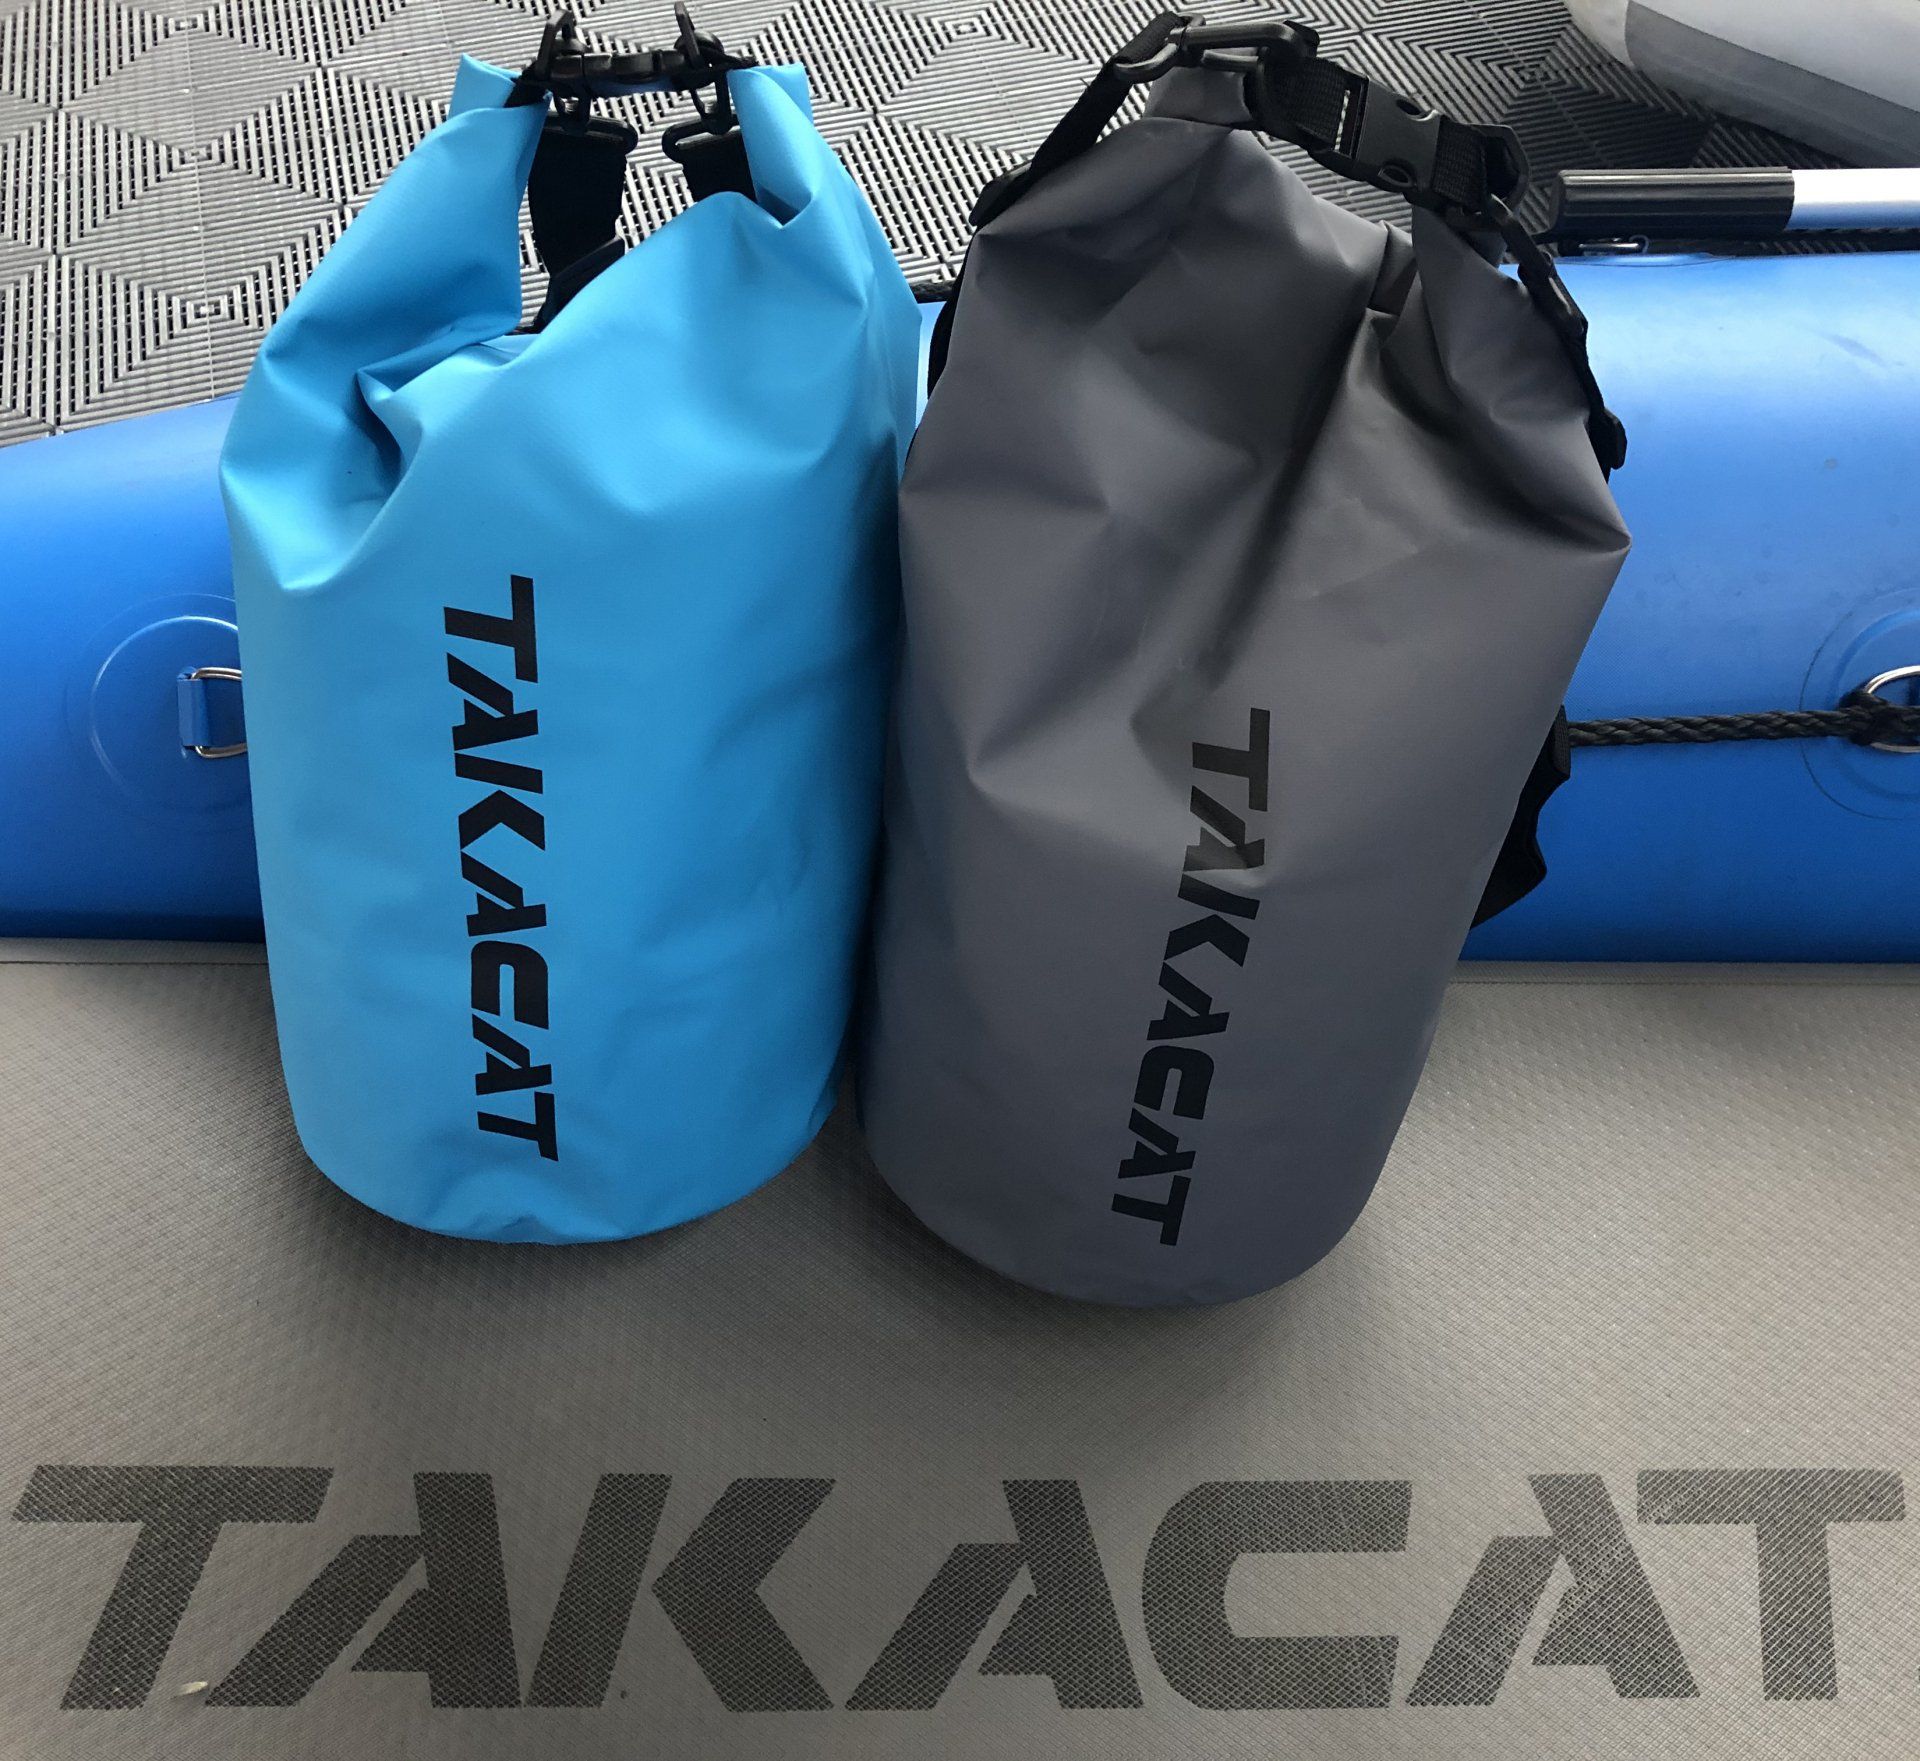 Il TAKACAT-BAG protegge dalla pioggia, dall'umidità e dagli spruzzi d'acqua.